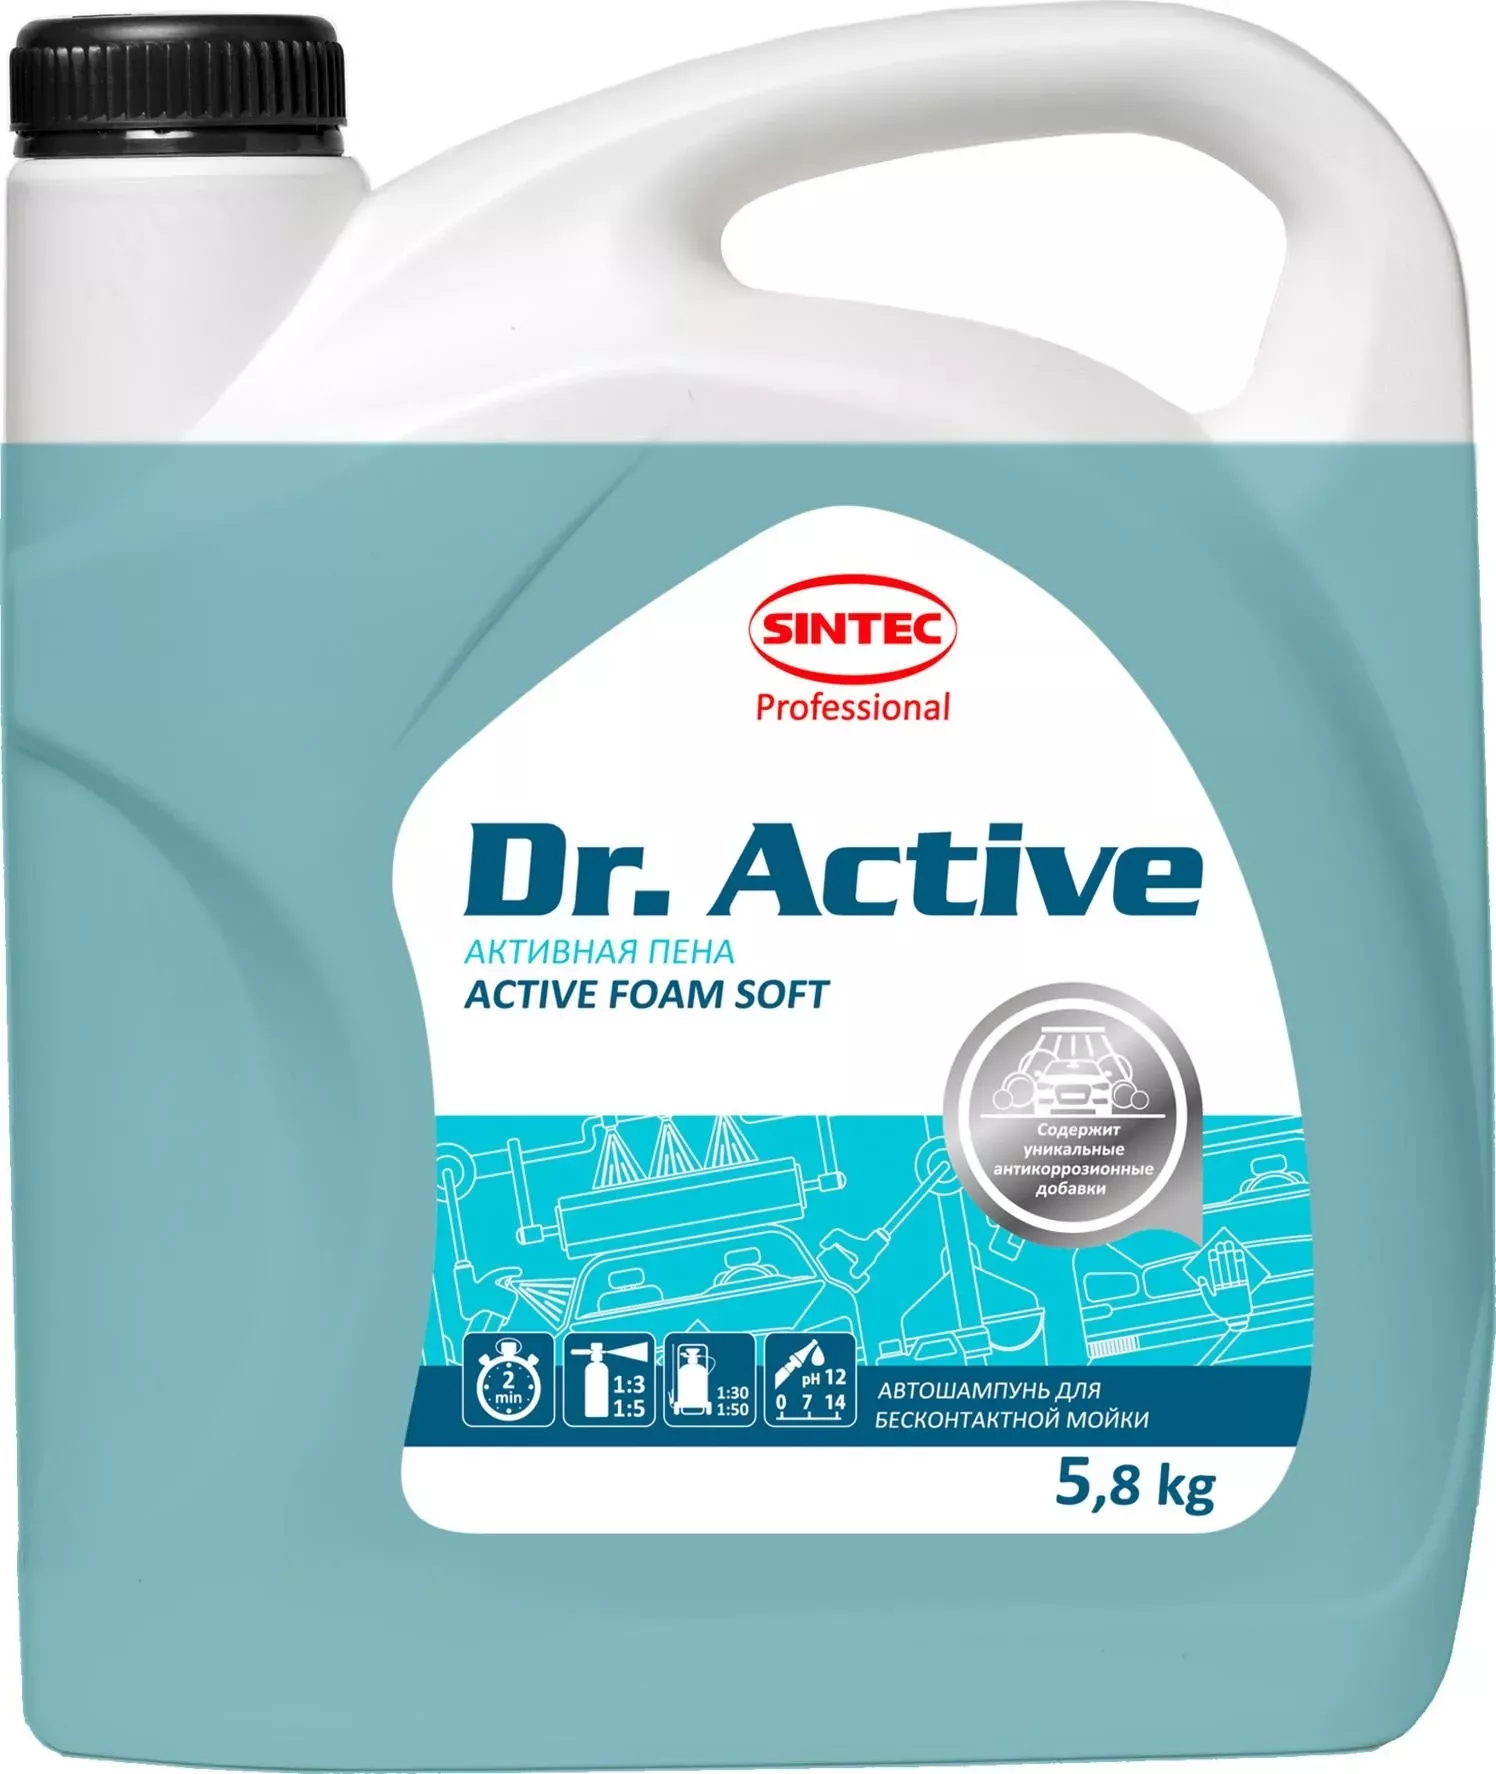 Автошампунь Sintec Dr. Active "Active Foam Soft" 5,8 кг DR. ACTIVE "ACTIVE FOAM SOFT"